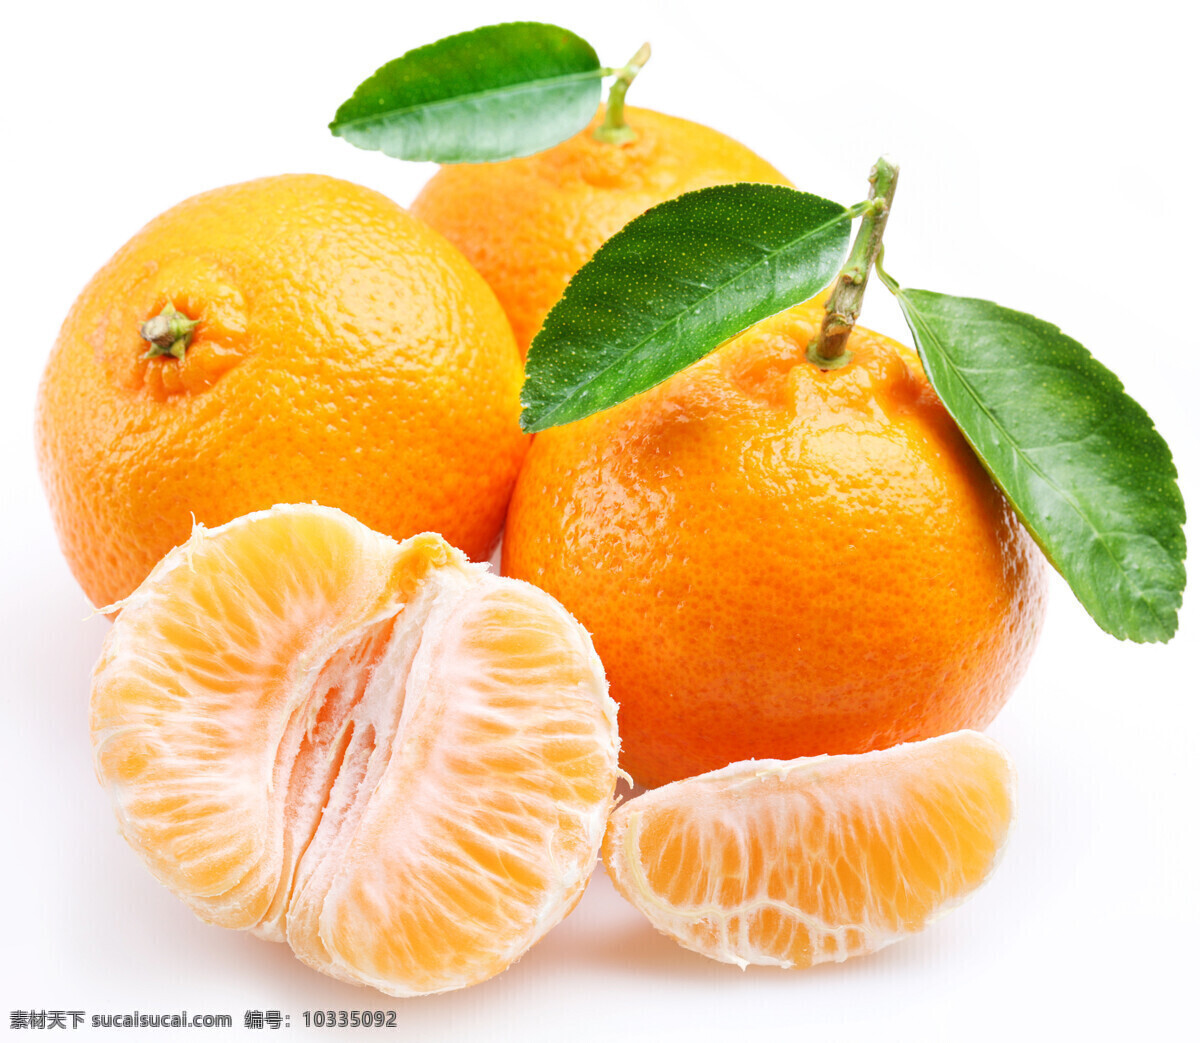 甜美 新鲜 桔子 橘黄色 橙黄色 橘子瓣 桔黄色 水果 拨皮的橘子 新鲜水果 高清图片 蔬菜图片 餐饮美食